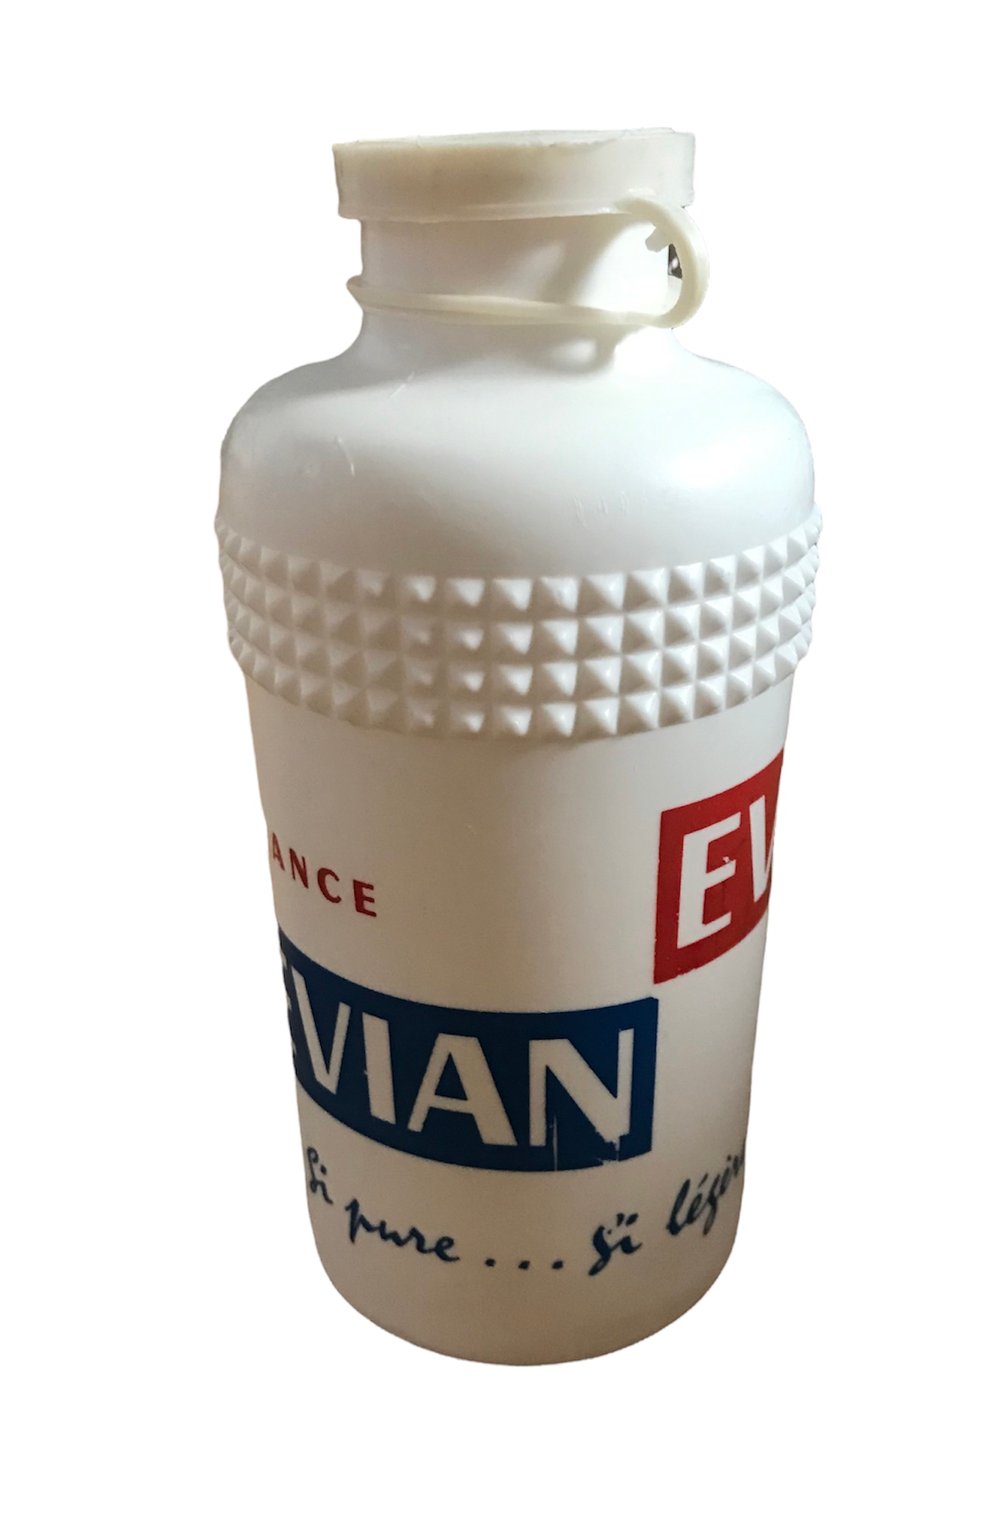 1960 - Tour de France -  Evian water bottle